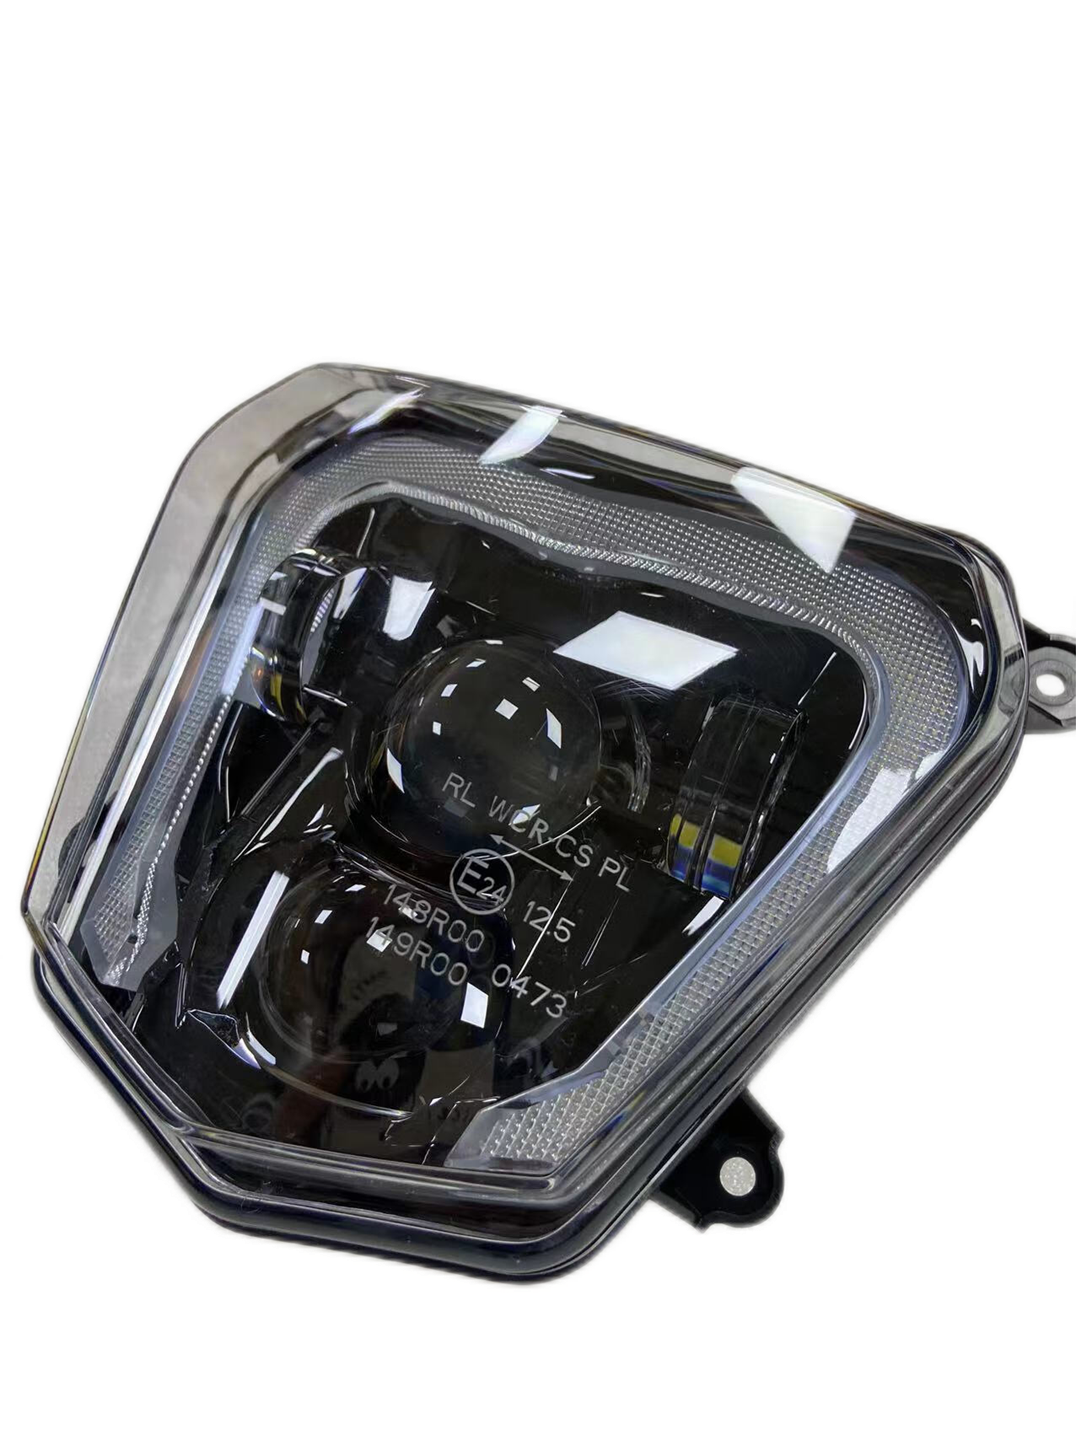 For KTM 690 Duke 2012-2019 Enduro LED Headlight Assembly Day